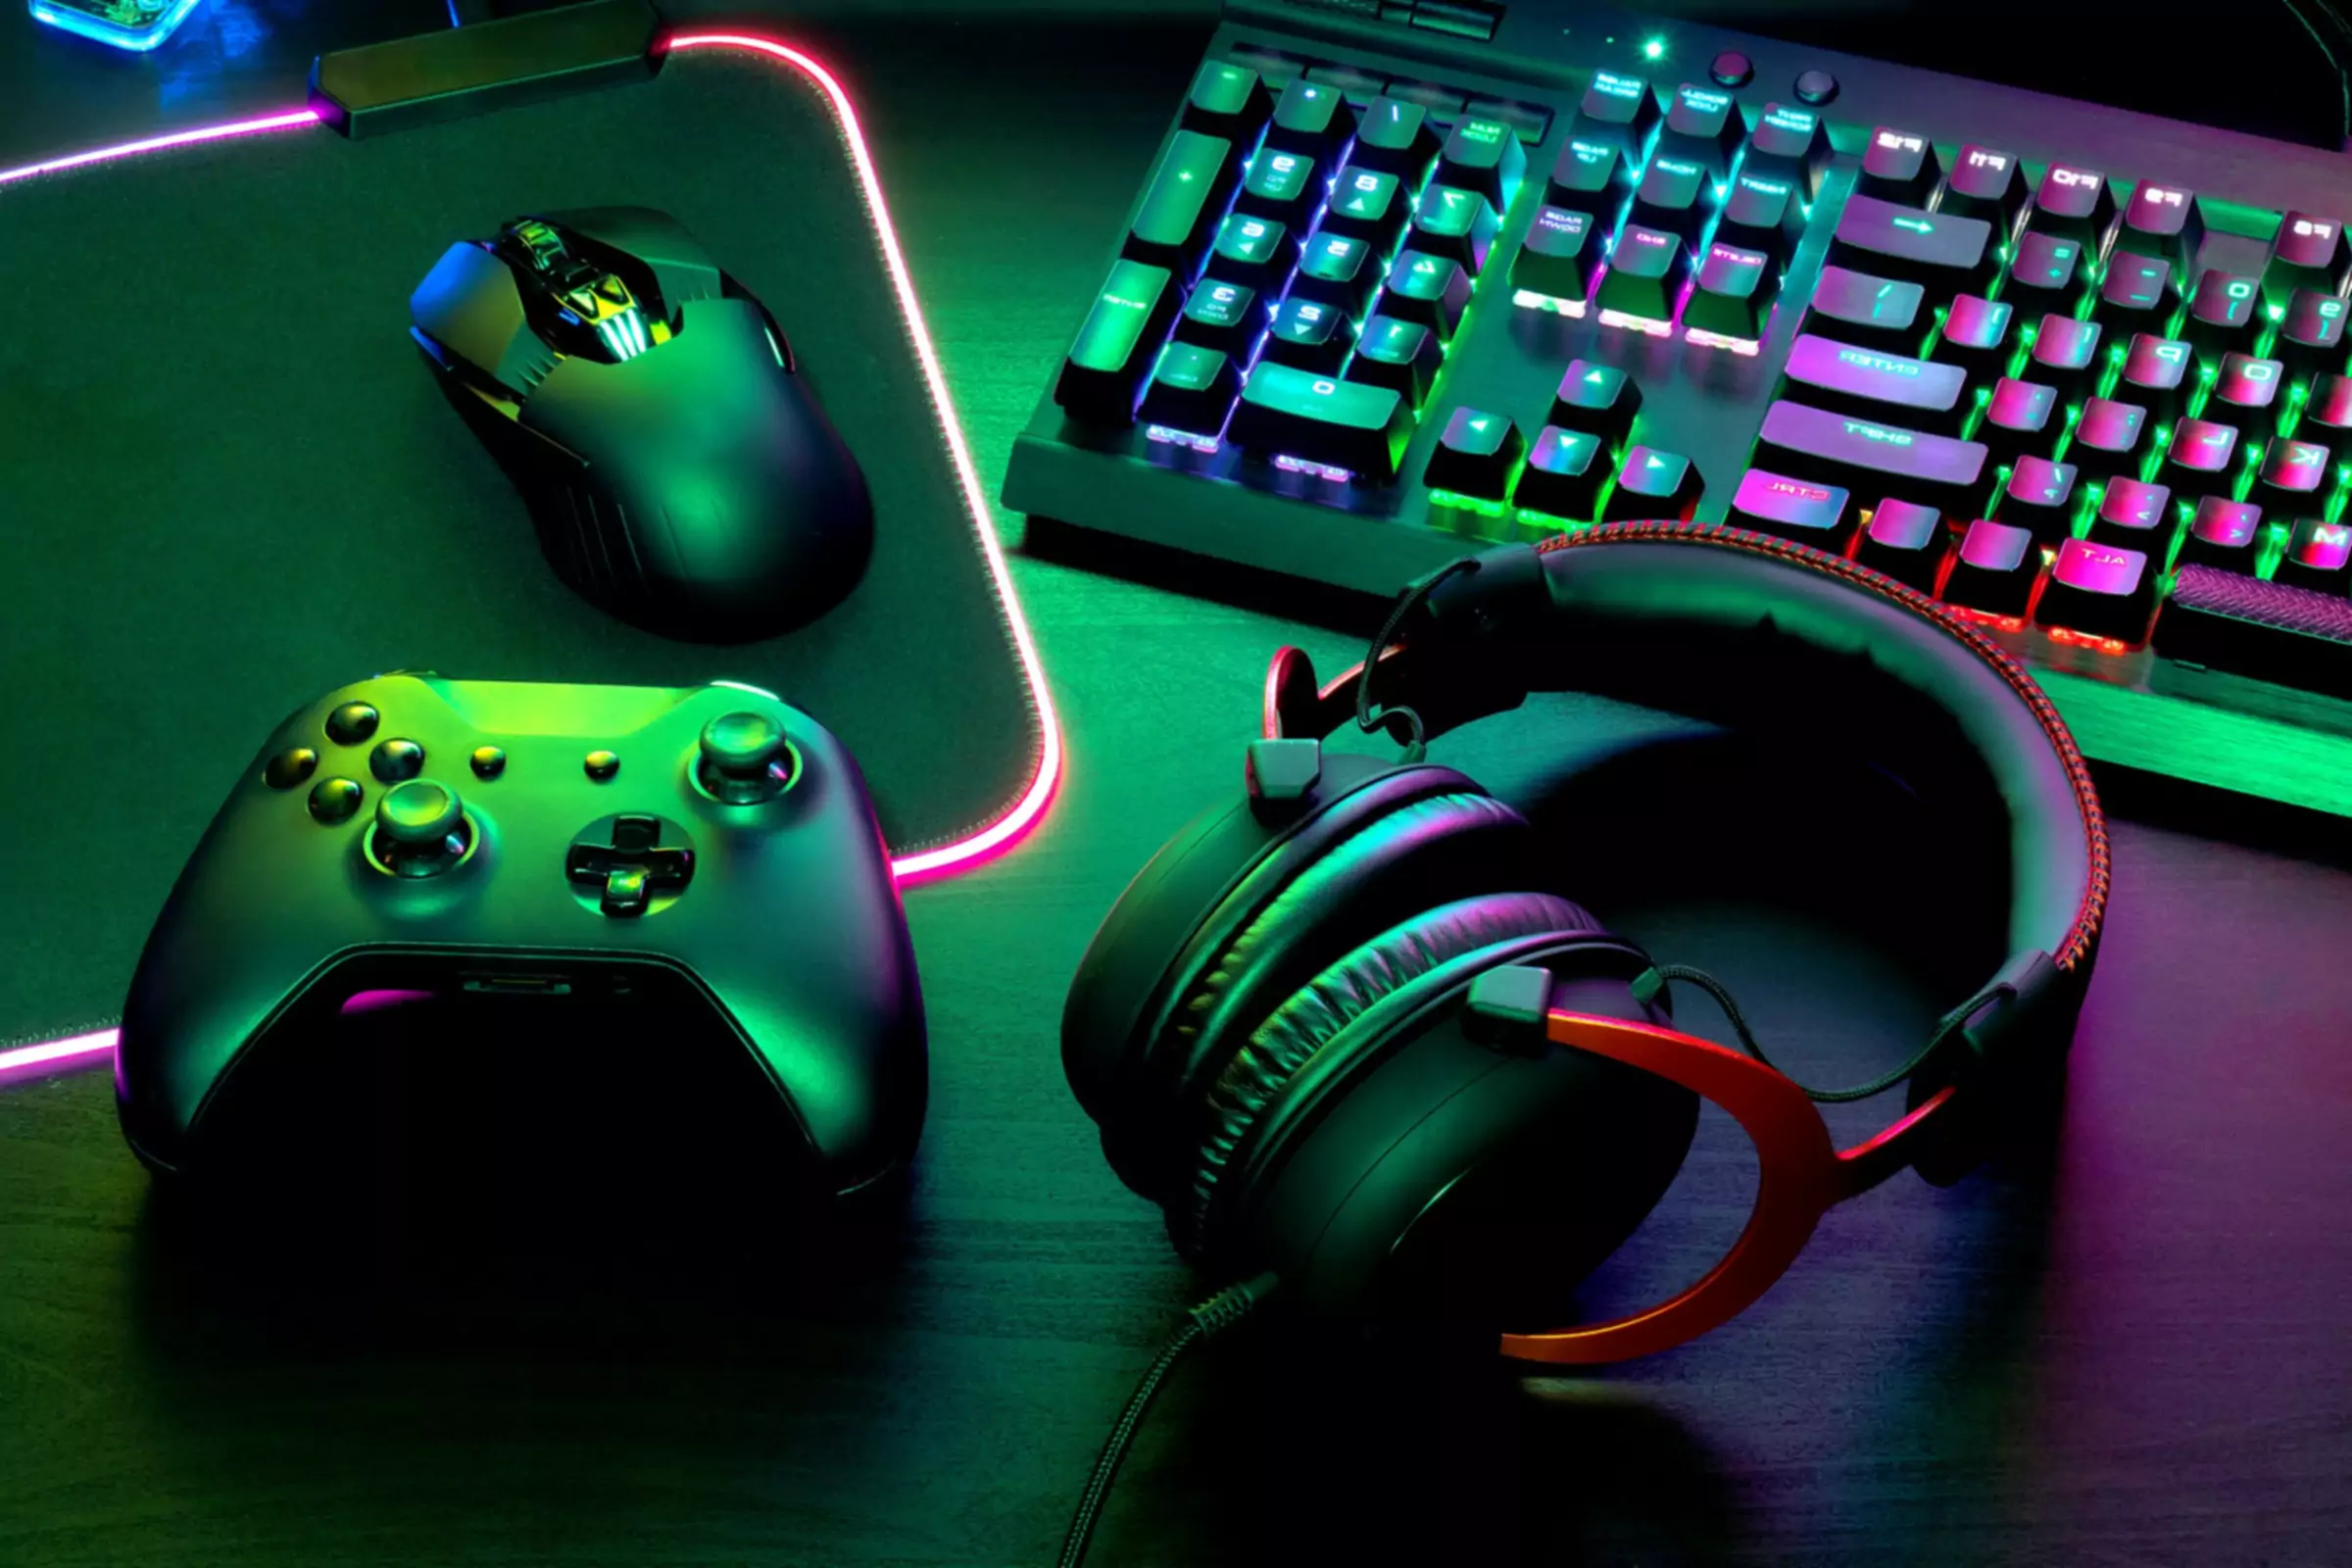 Manette de jeu à côté du clavier souris et clavier éclairés par des lumières vertes et violettes